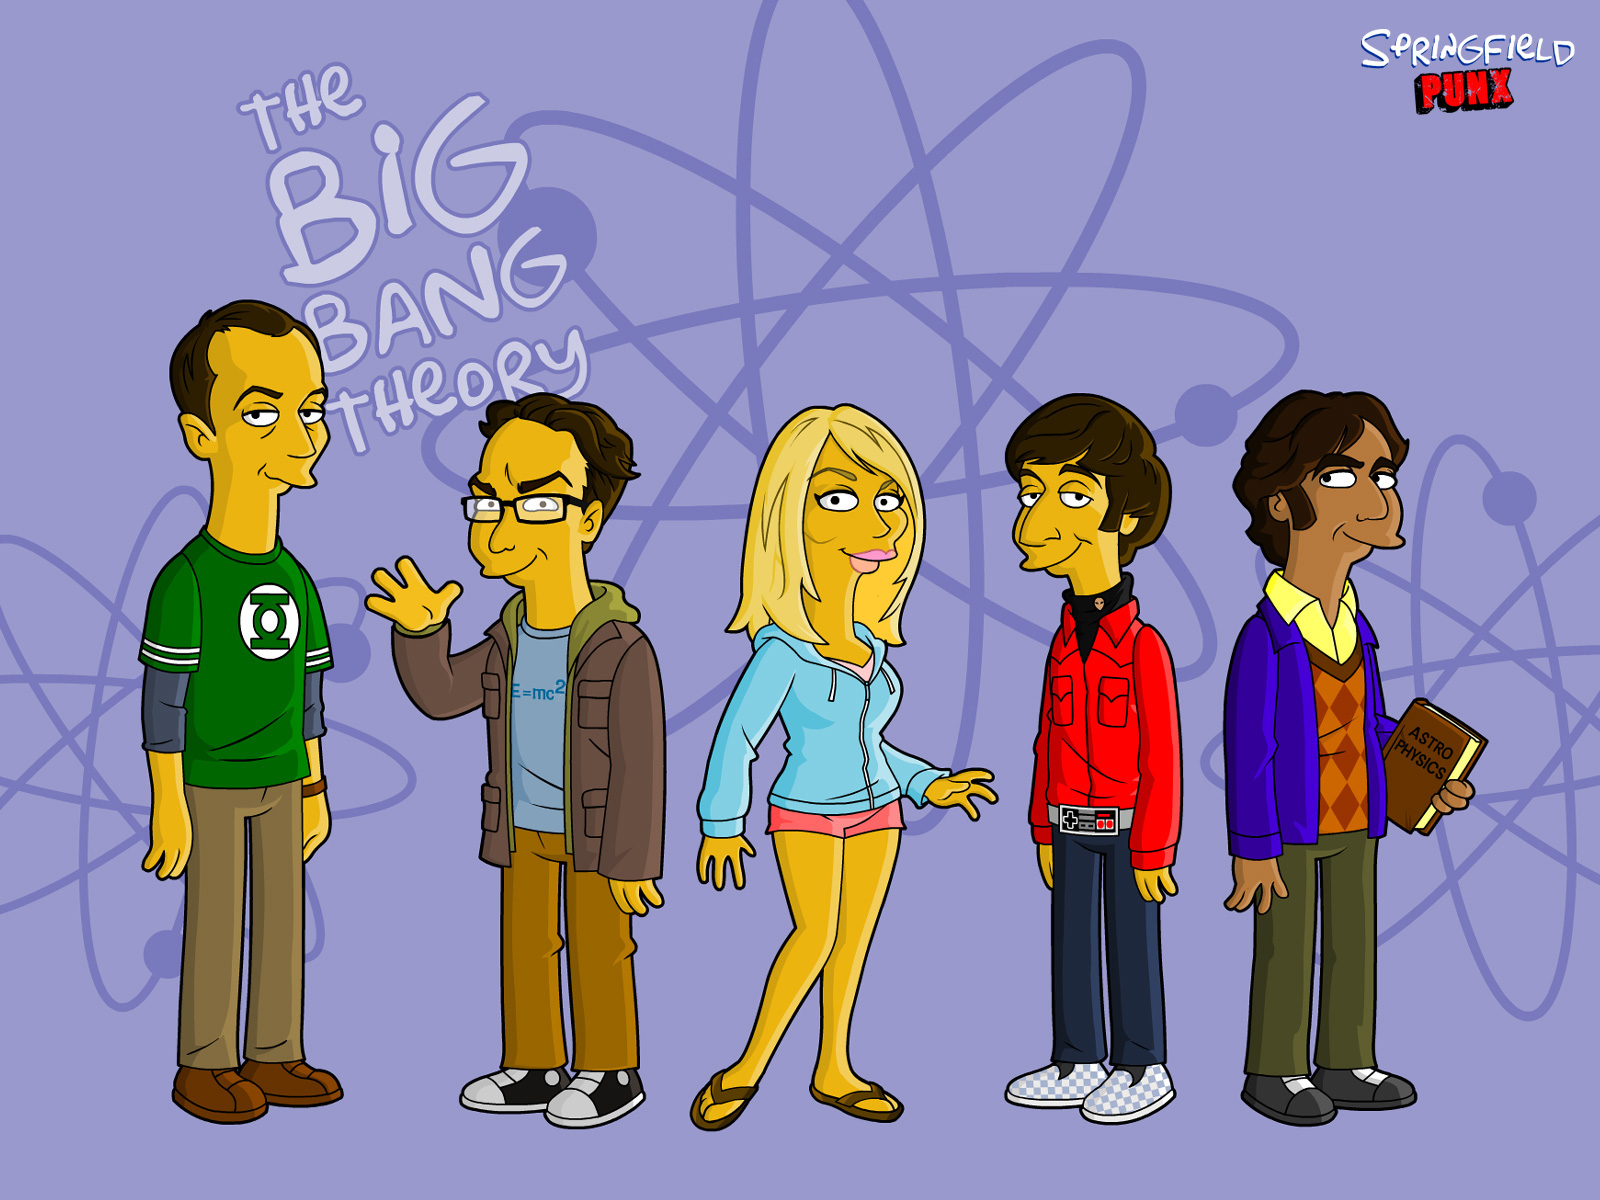 Aktiv Busk Ledsager Springfield Punx: The Big Bang Theory Wallpaper!